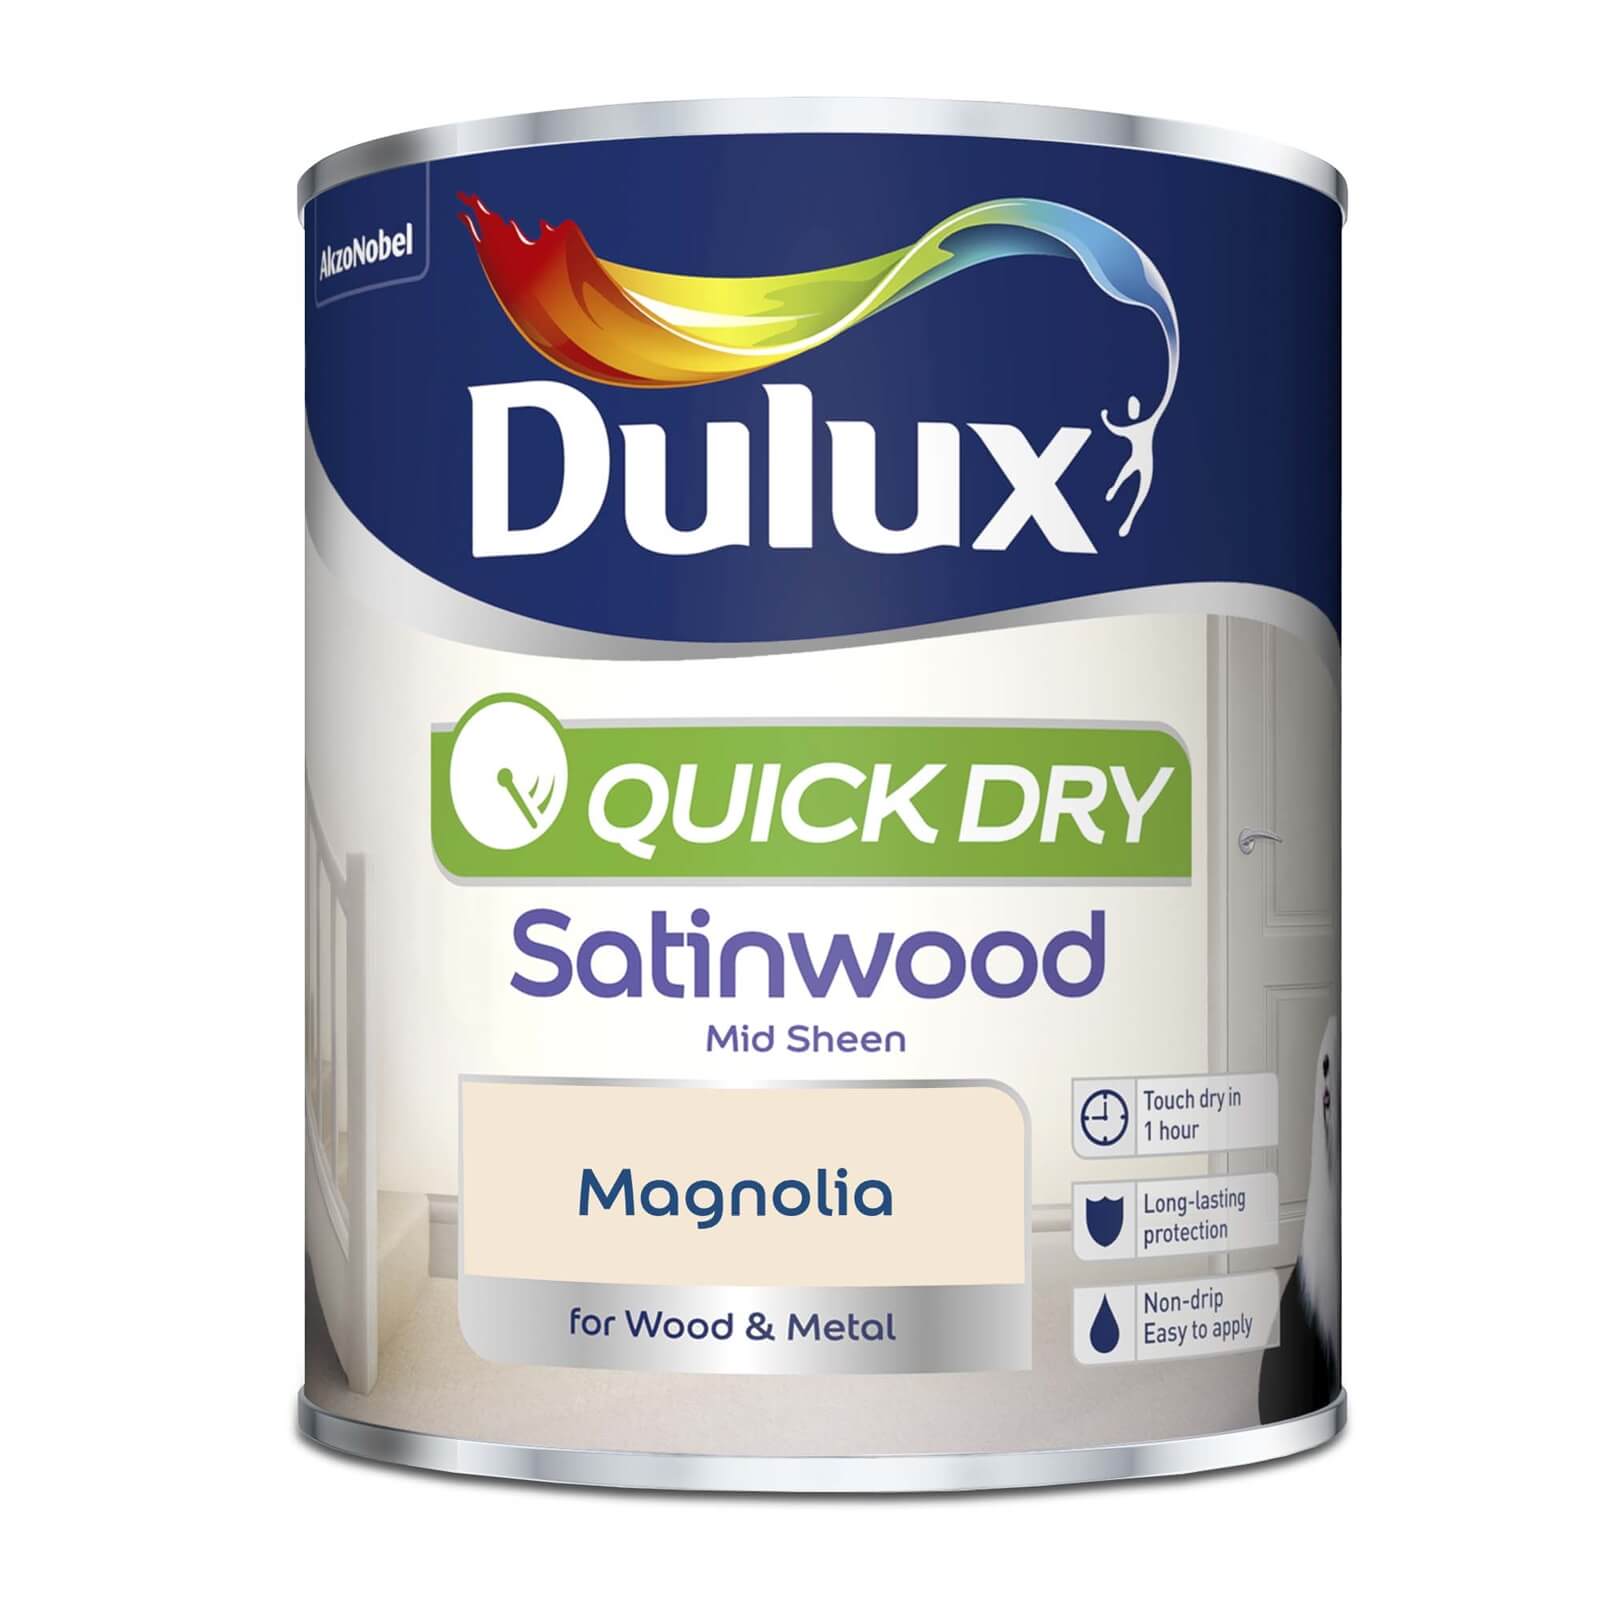 Dulux Quick Dry Satinwood Magnolia - 750ml